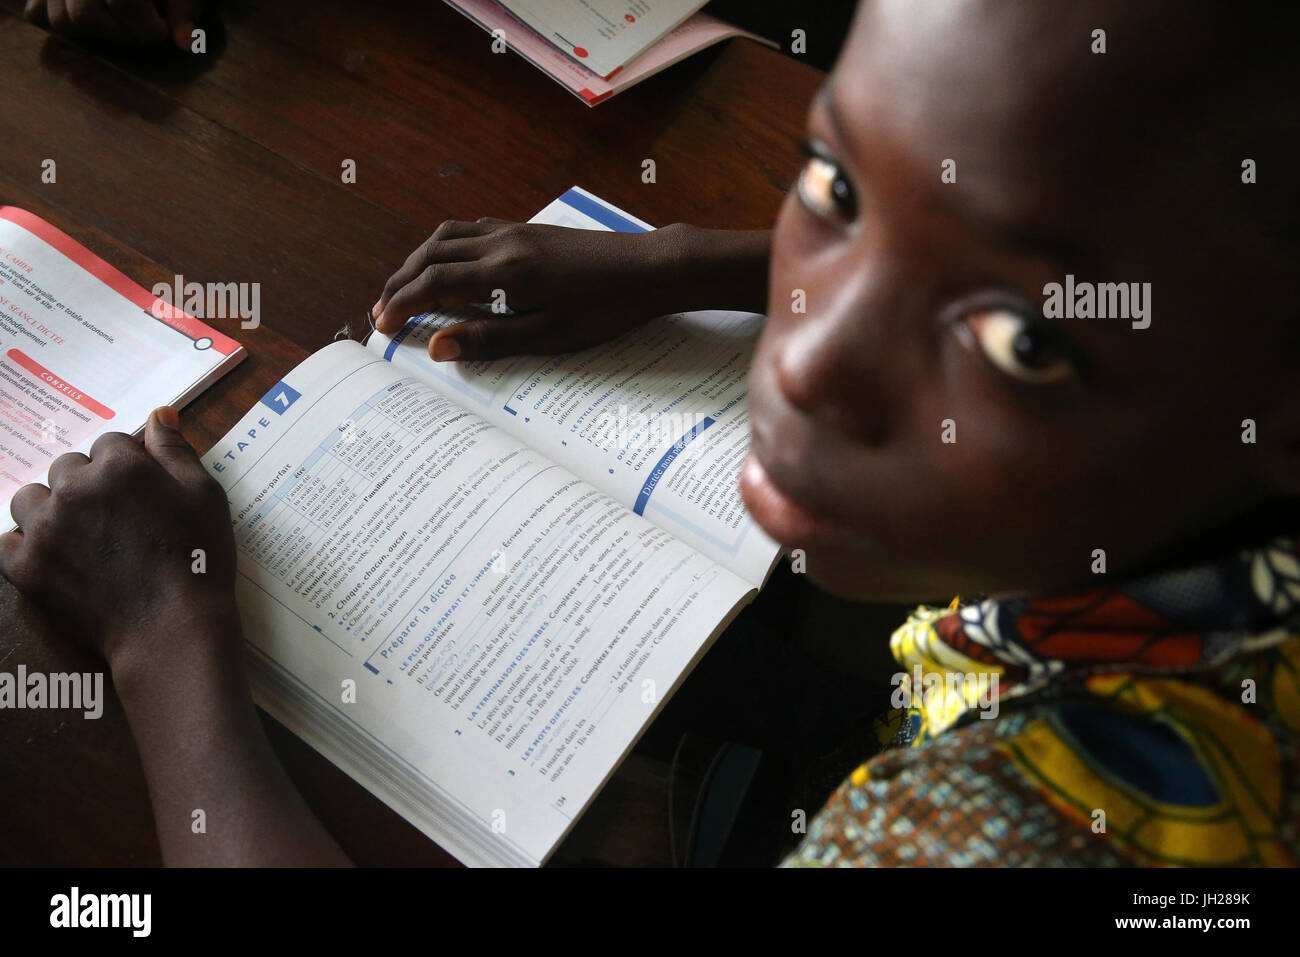 Africani scuola primaria. Bambino sponsorizzato da ong francese : la Chaine de l'Espoir. La libreria. Lomé. Il Togo. Foto Stock